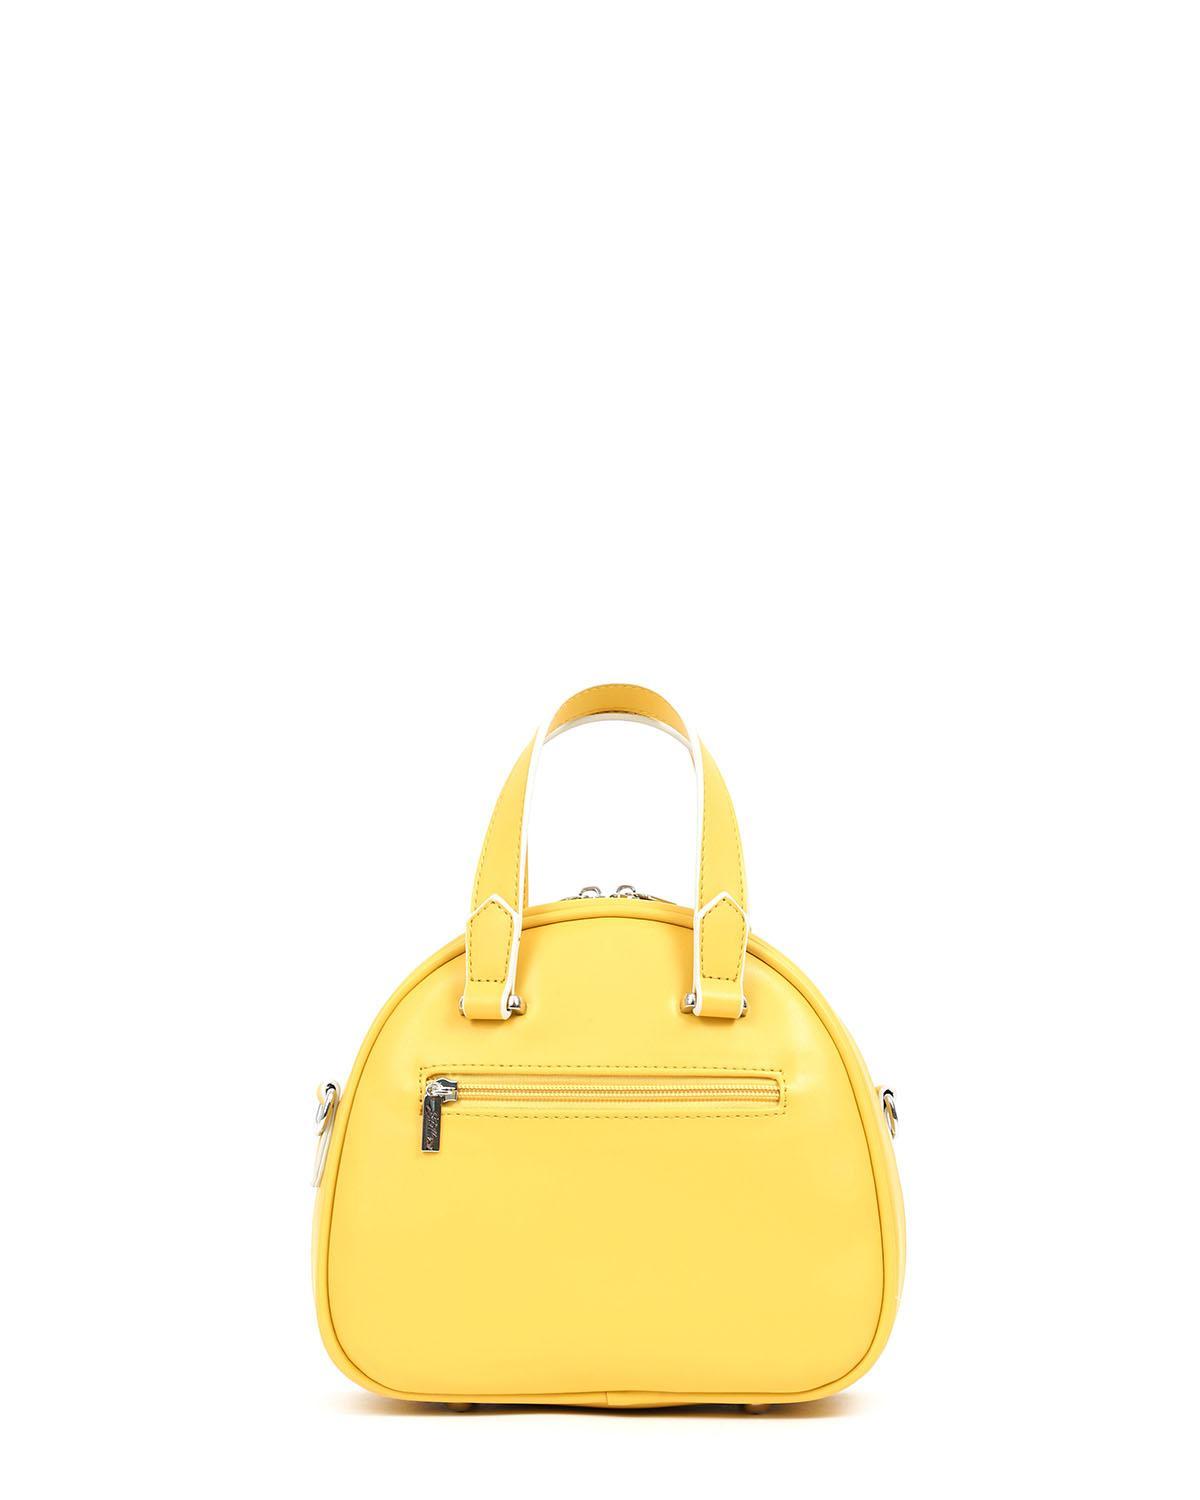 |17240| Καθημερινή τσάντα χειρός κίτρινη